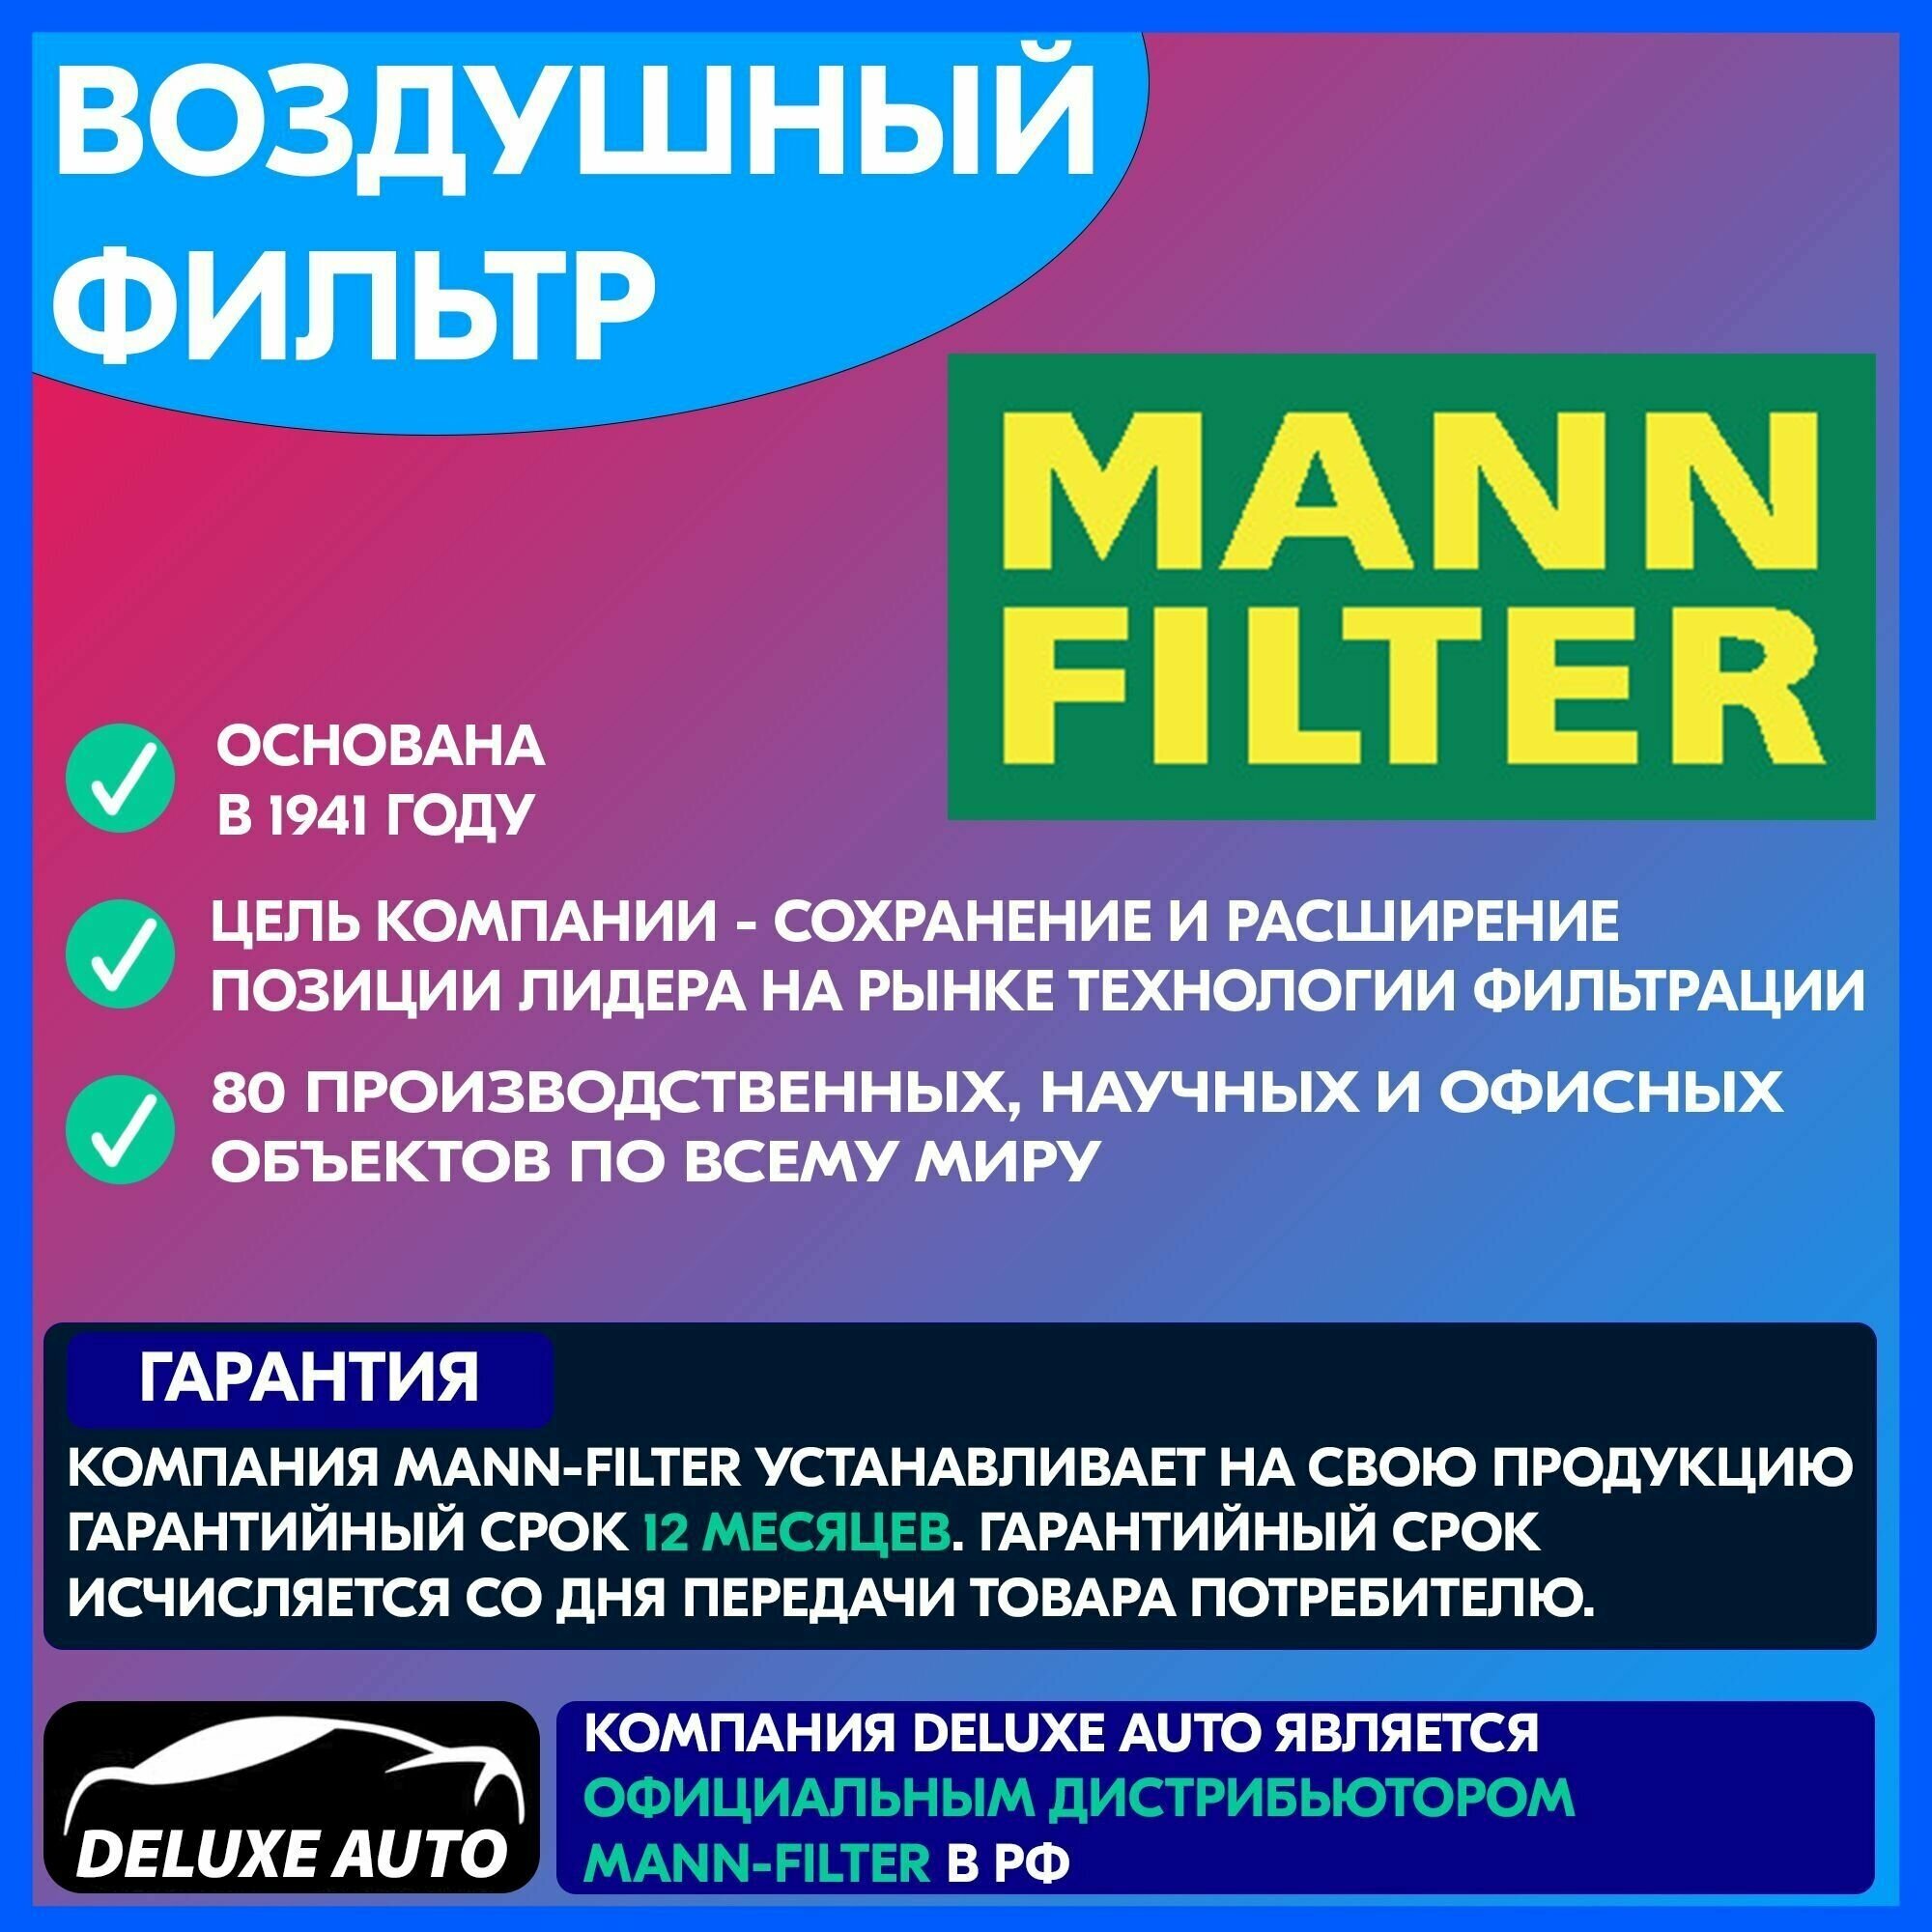 Воздушный фильтр Mann-Filter - фото №7